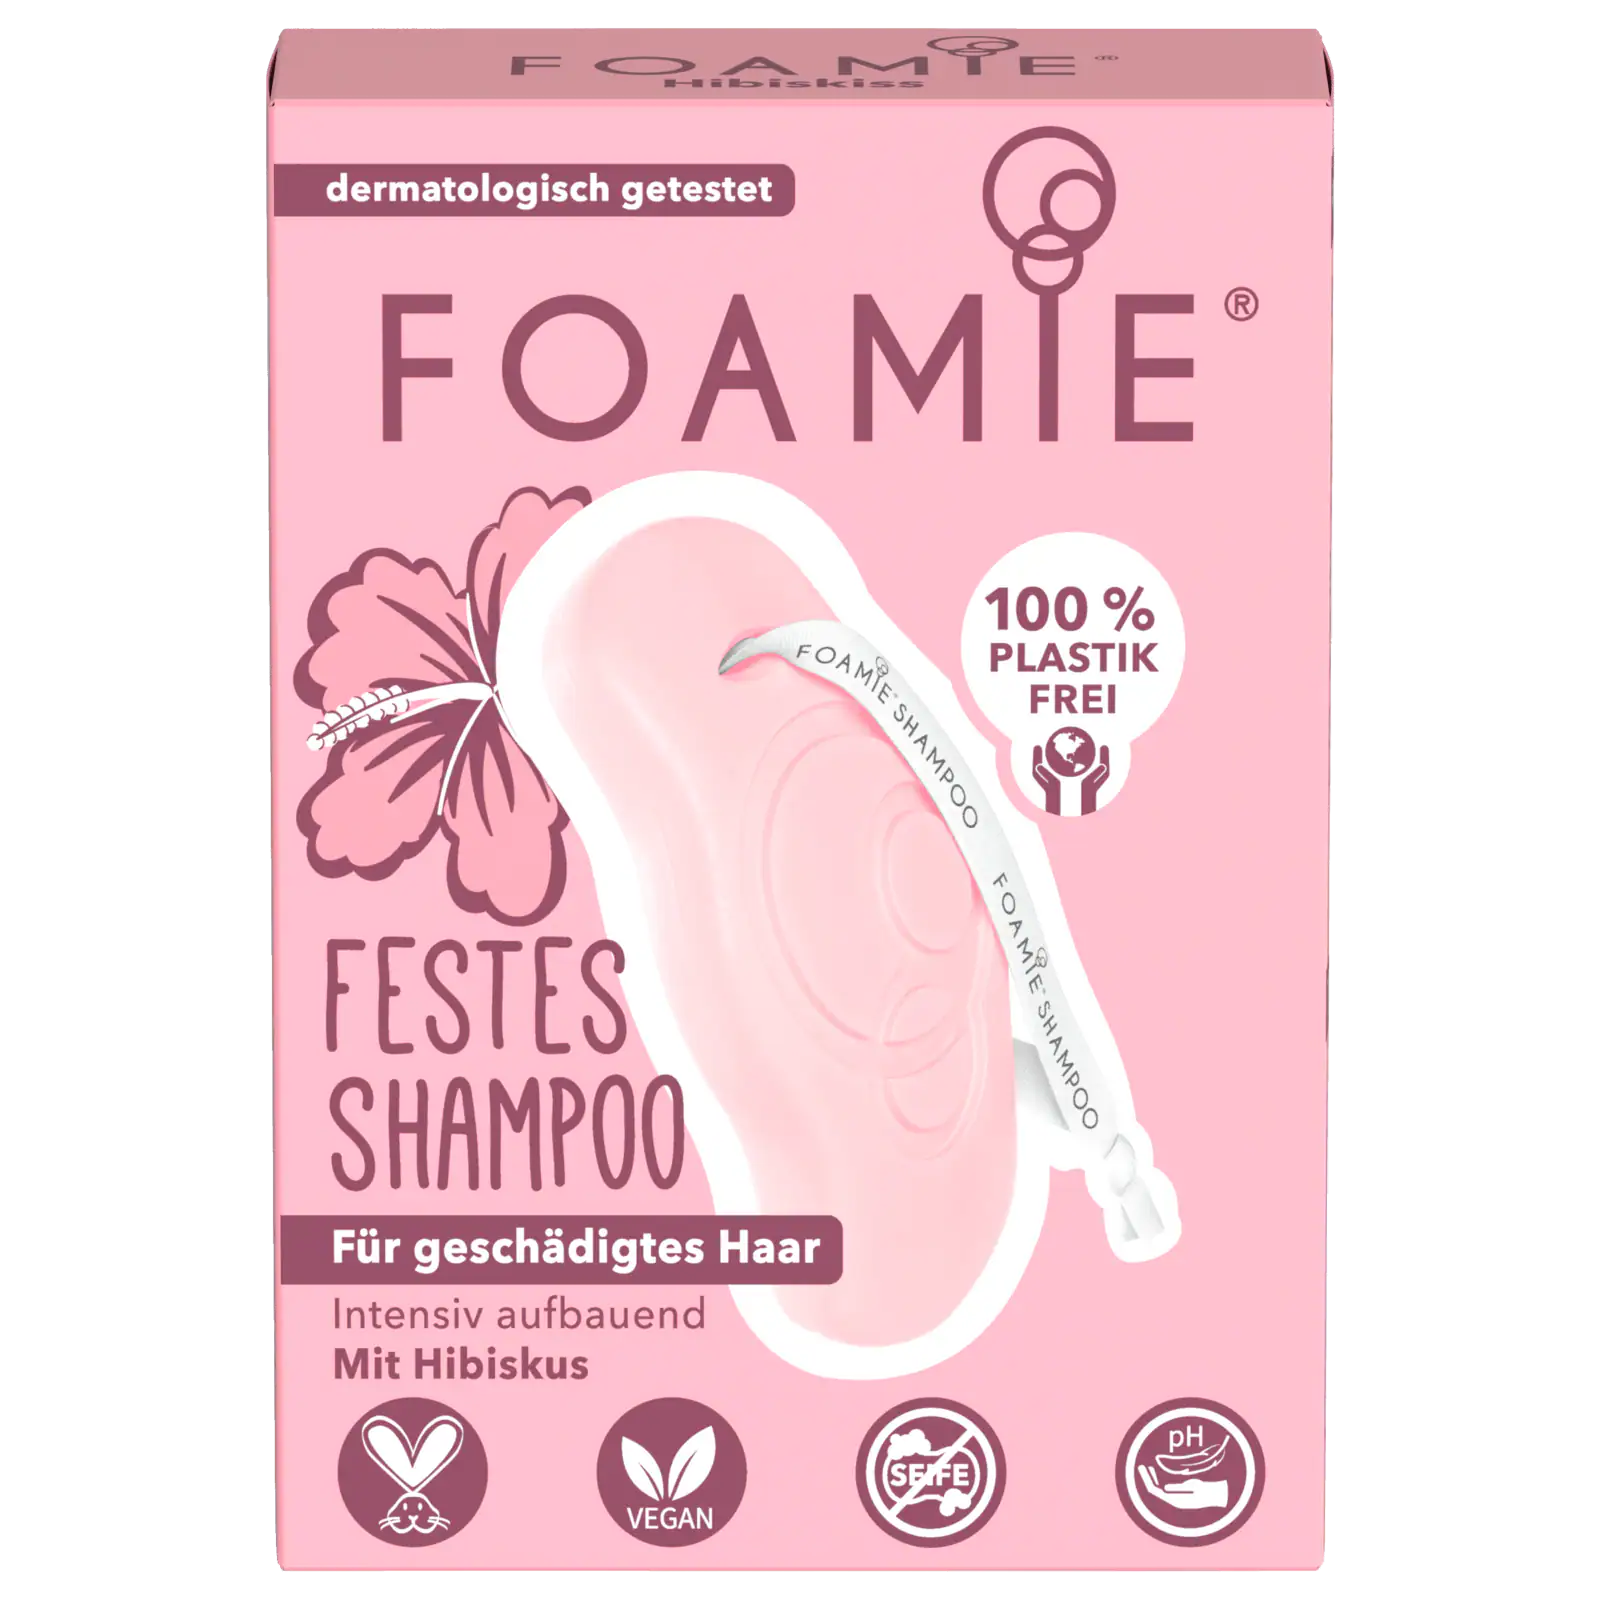 online Haar geschädigtes festes Foamie Shampoo bei 80g REWE bestellen! Hibiskus